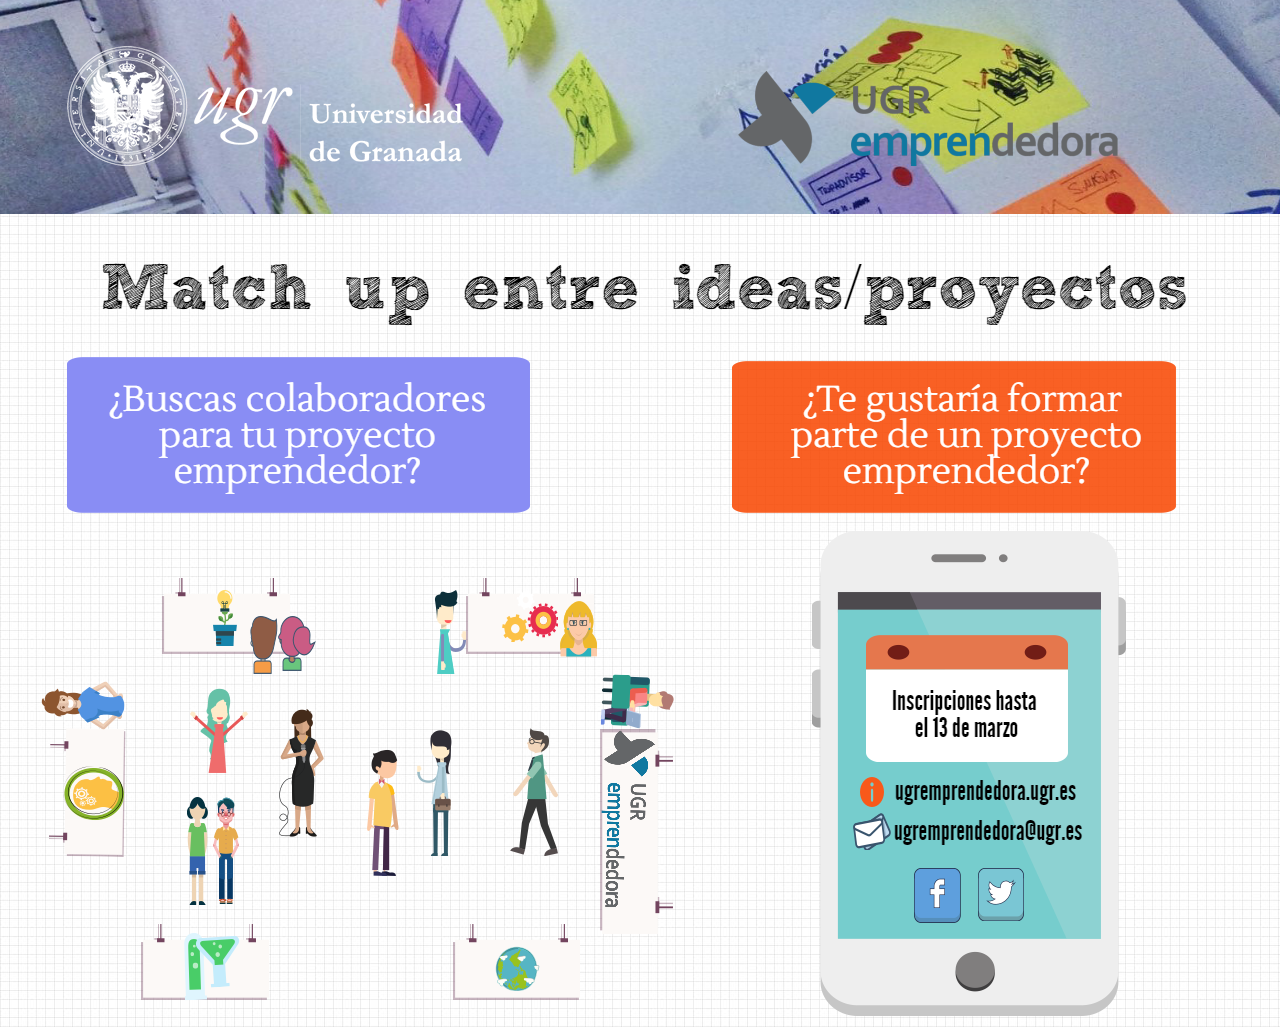 Match up entre ideas/proyectos de la Universidad de Granada